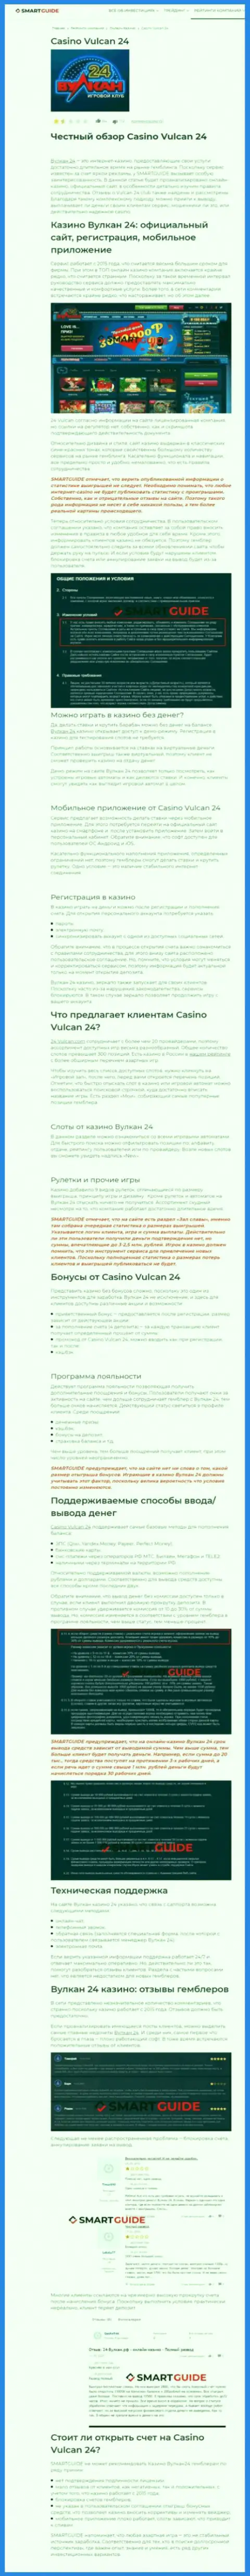 Вулкан 24 - это организация, которая зарабатывает на отжатии вложенных денежных средств собственных клиентов (обзор мошеннических действий)